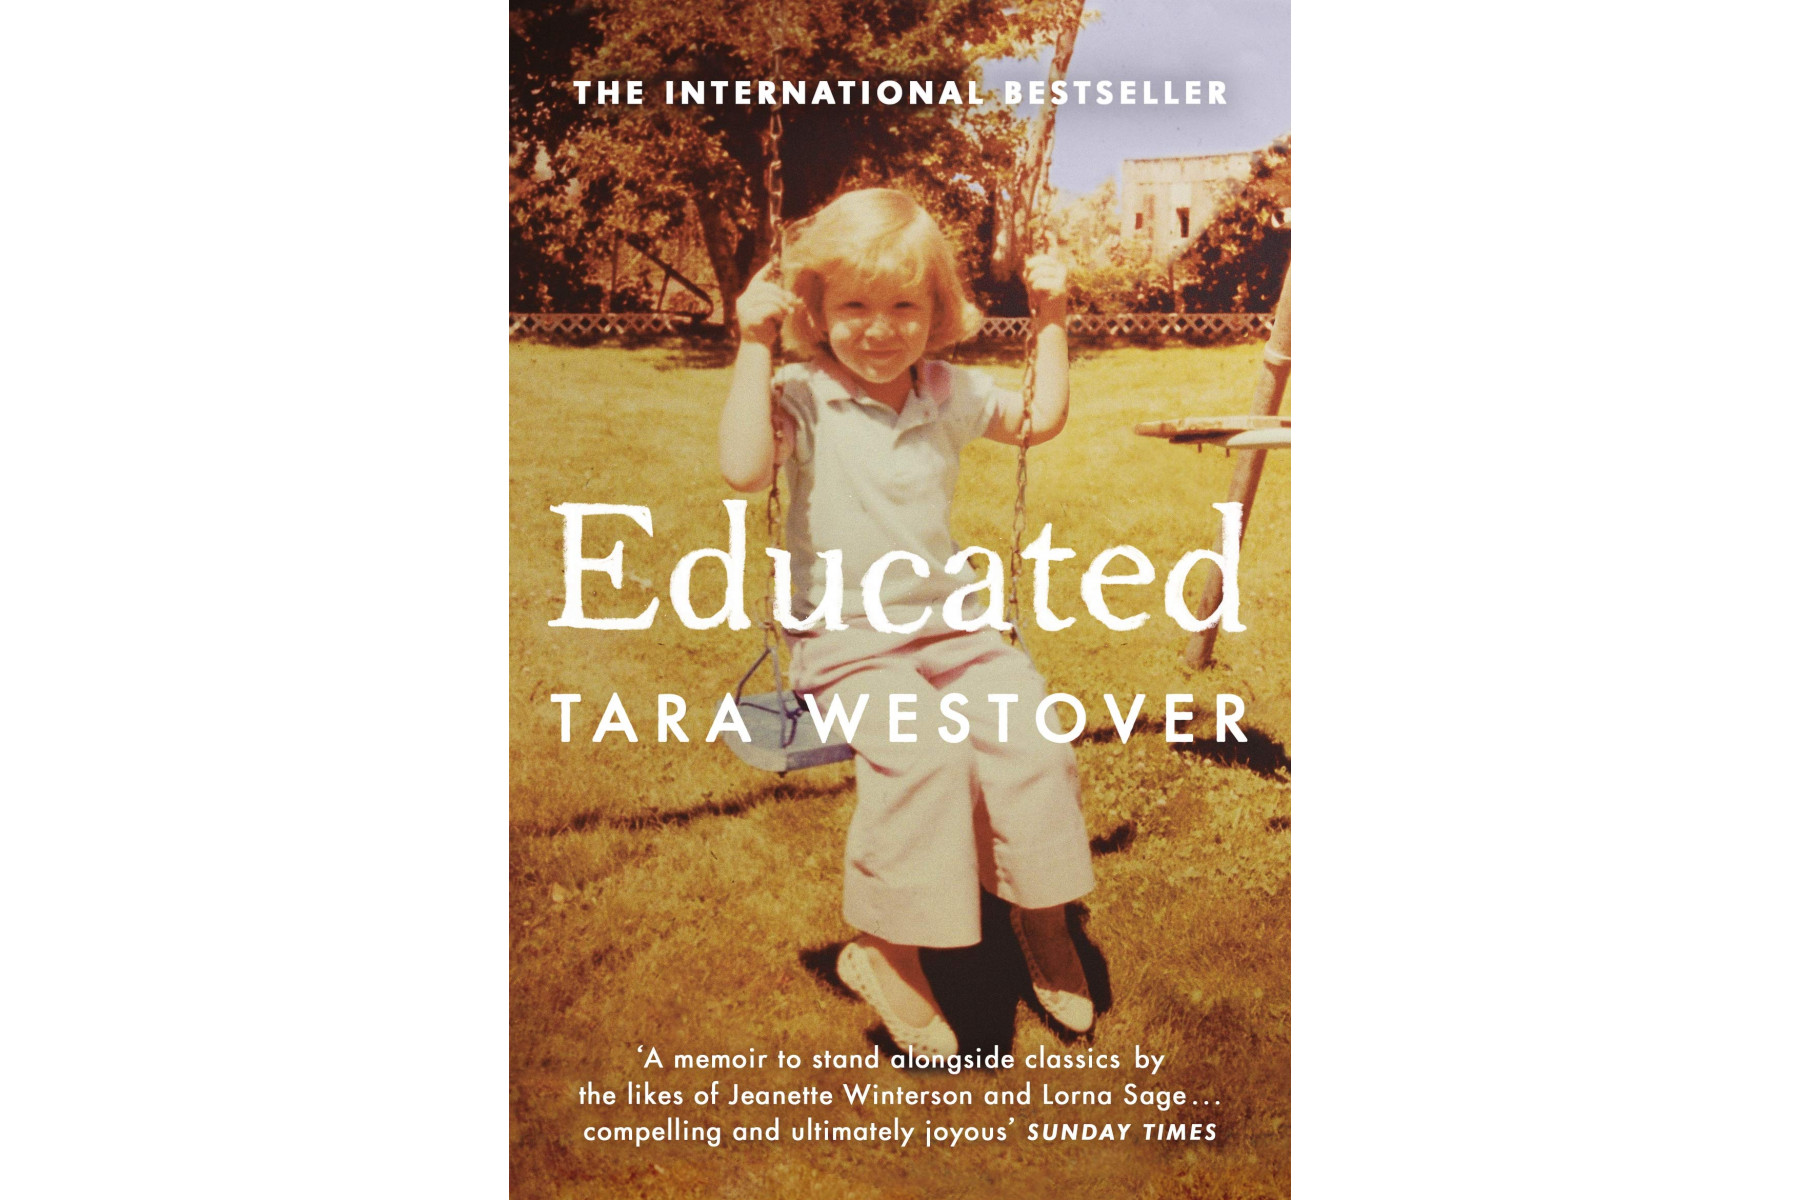 Educated: The international bestselling memoir